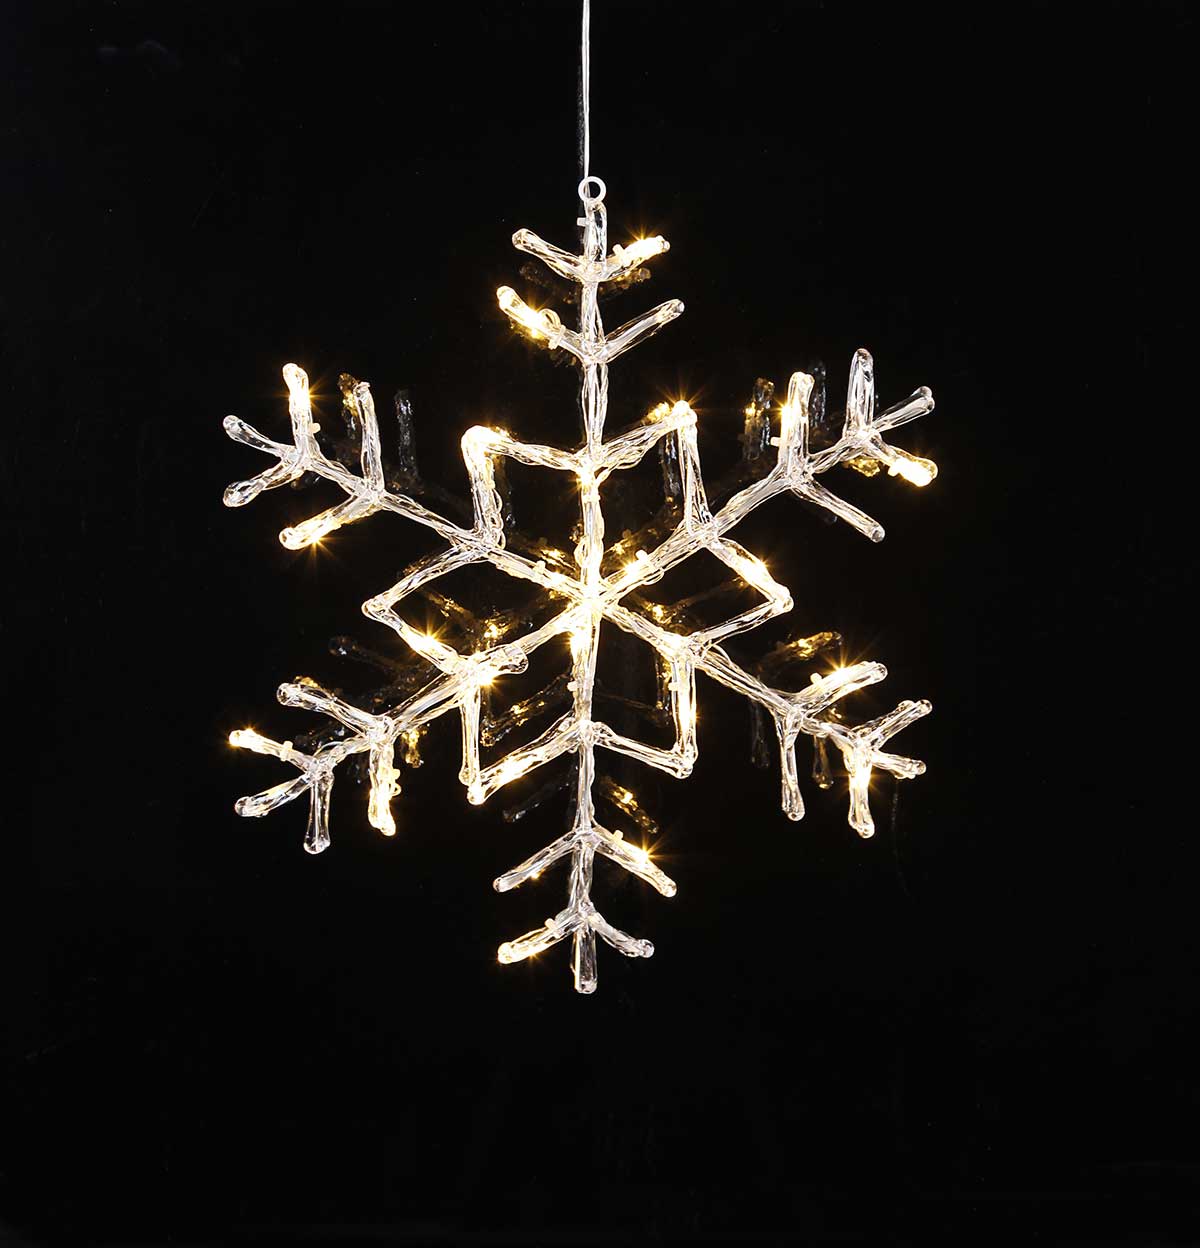 Függeszthető, 24 db LED világítással felszerelt, világító karácsonyi jeges hópehely dekoráció